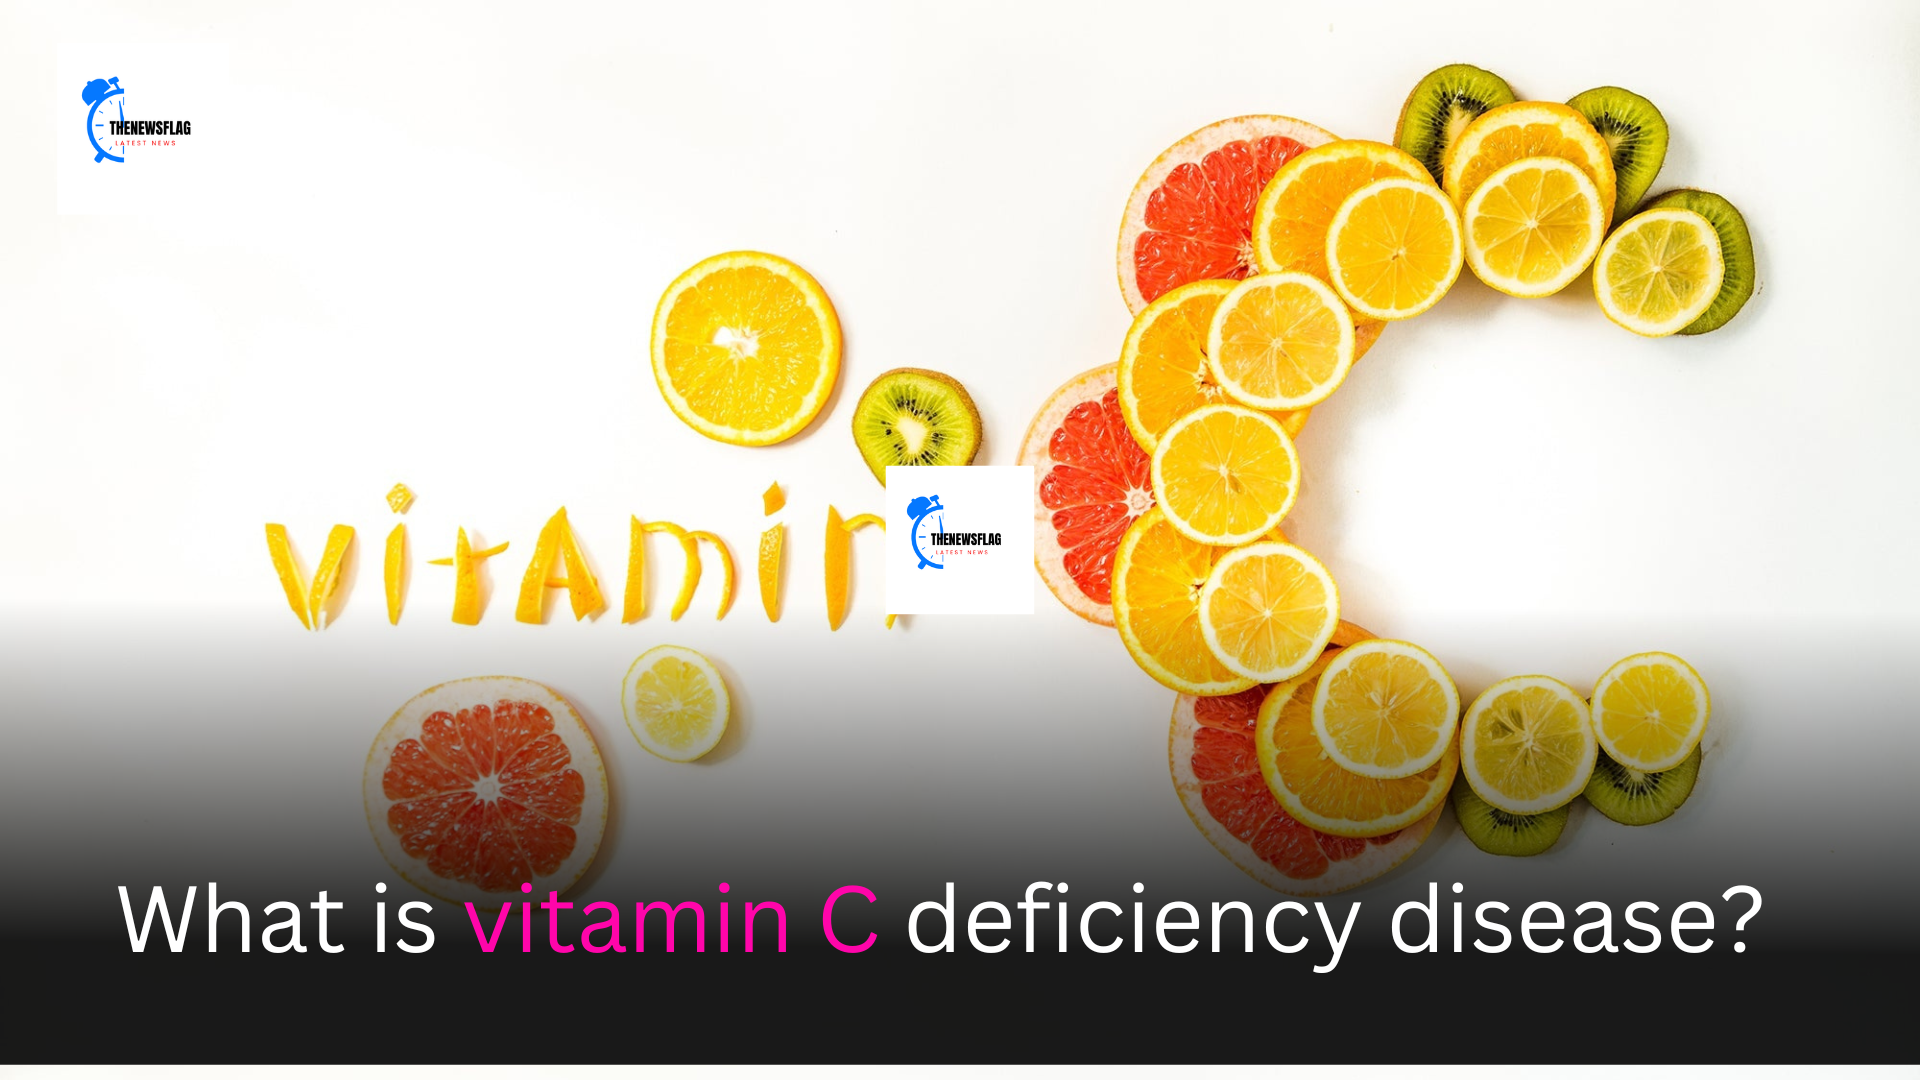 What is vitamin C deficiency disease?